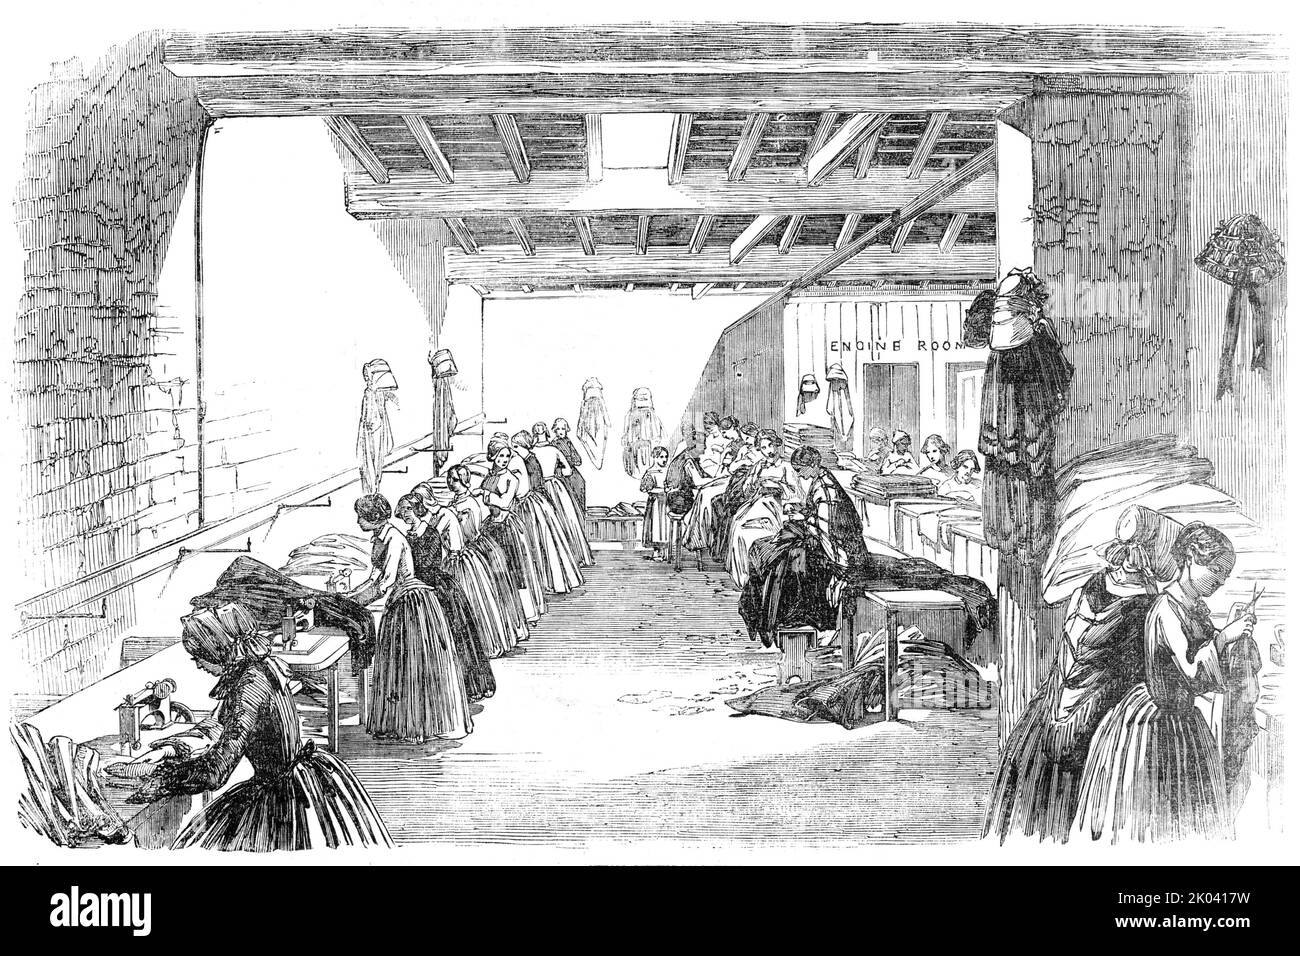 Dampfnähmaschinen, 1854. Der Maschinenraum der Firma Holloway, Crowe und Holloway, '...Großhandel Bekleidungshersteller, Stroud, Gloucestershire...Hier sind zwanzig Maschinen in Arbeit, "das ganze wird durch Dampfkraft angetrieben"...jede Maschine wird von einer jungen Frau besucht, die beide Hände hat, um das Tuch zu führen, während der Fuß die Maschine anspringt oder anhält...mittels eines Hebels, der mit der darunter liegenden Schaftbahn verbunden ist. Die Beschäftigung dieser Yonng-Frauen ist nicht mühsam, wie beim Handnähen, sondern... gesund, amüsant und mit größter Leichtigkeit durchgeführt... die Maschinen, die Th sind Stockfoto